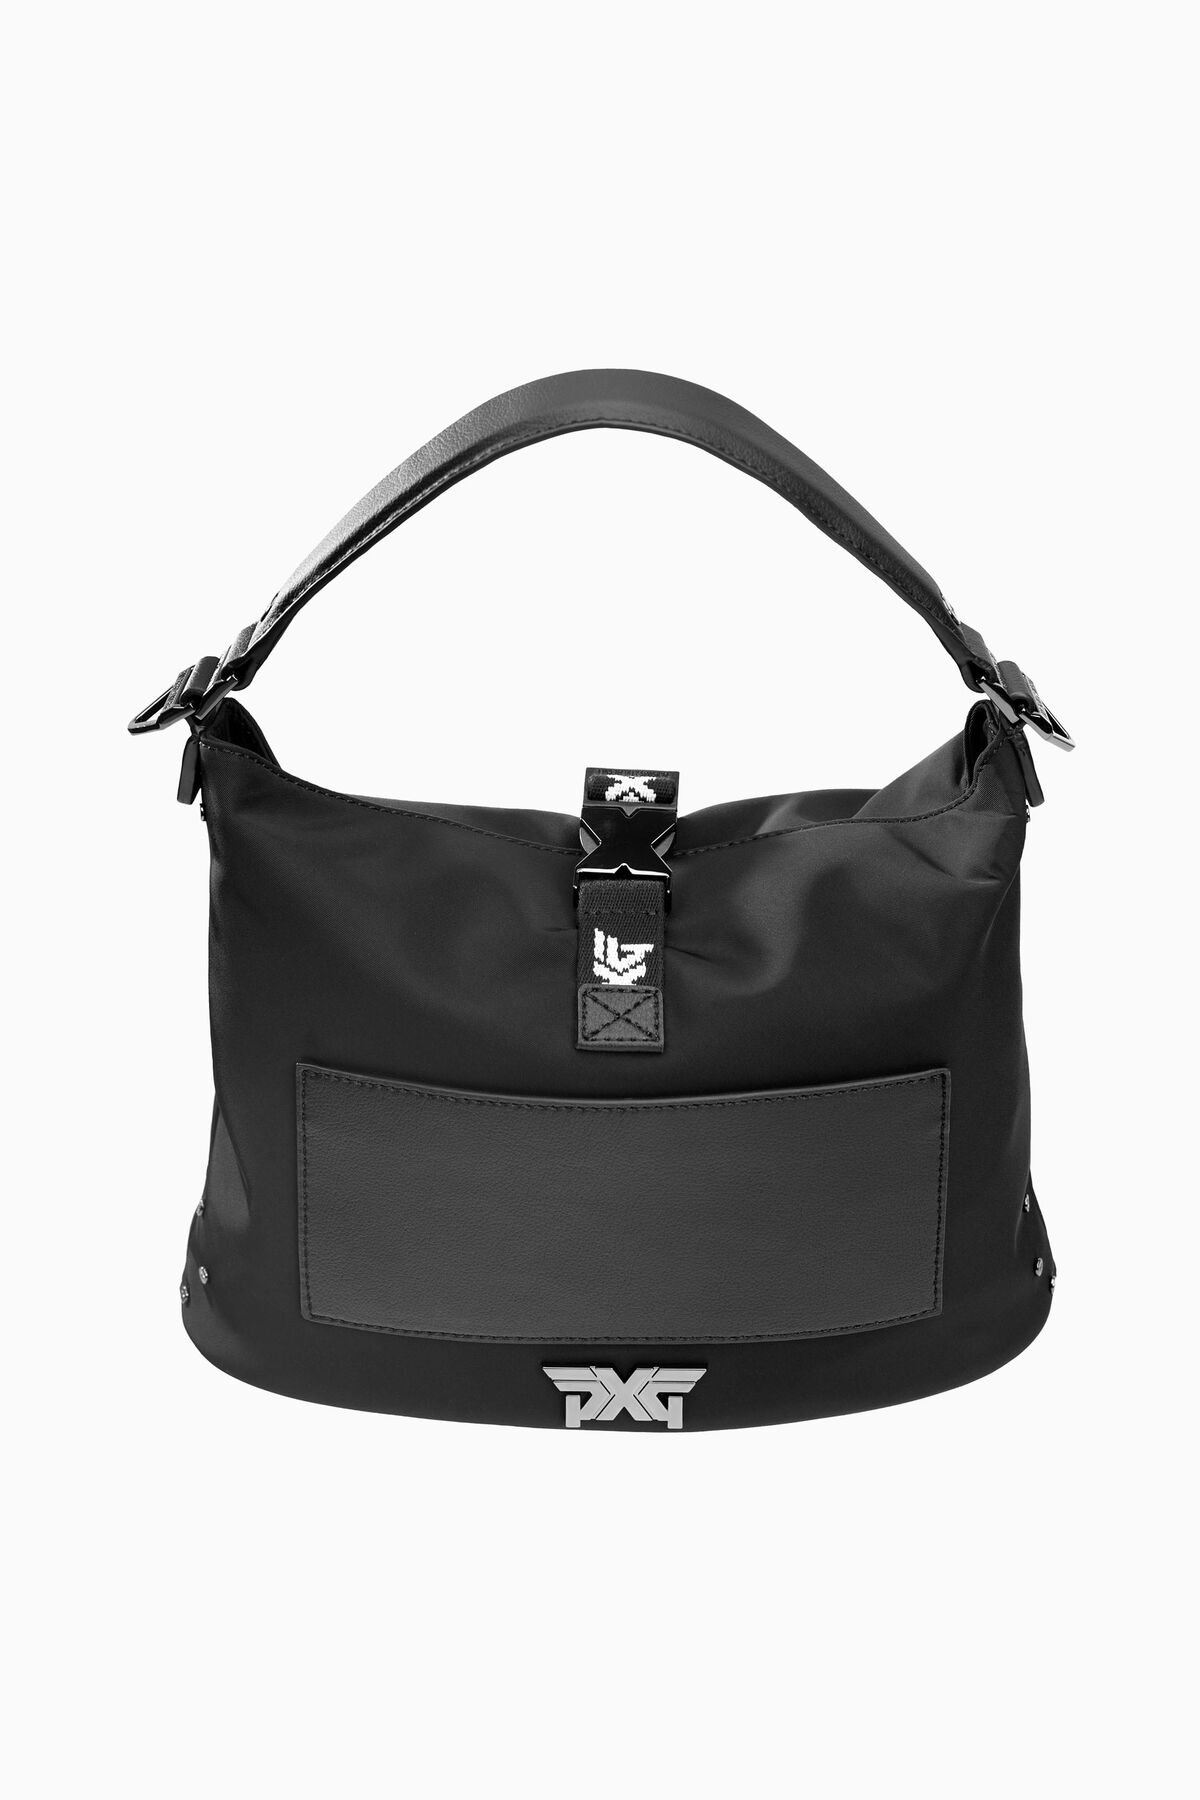 PXG Lightweight Shoulder Bag 